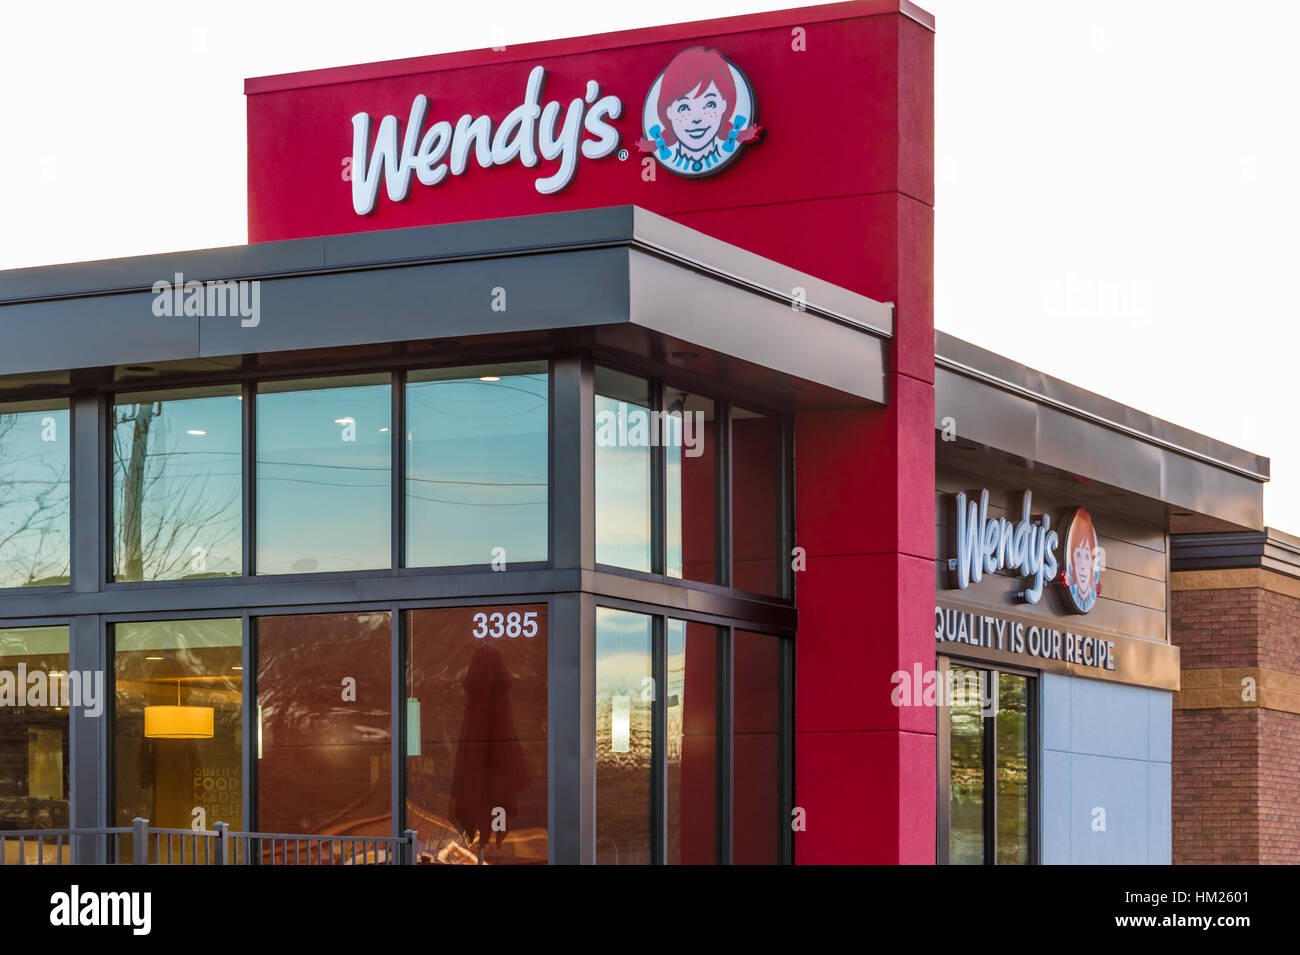 Wendy's, une chaîne de restauration rapide américaine populaire fondée par Dave Thomas. (ÉTATS-UNIS) Banque D'Images